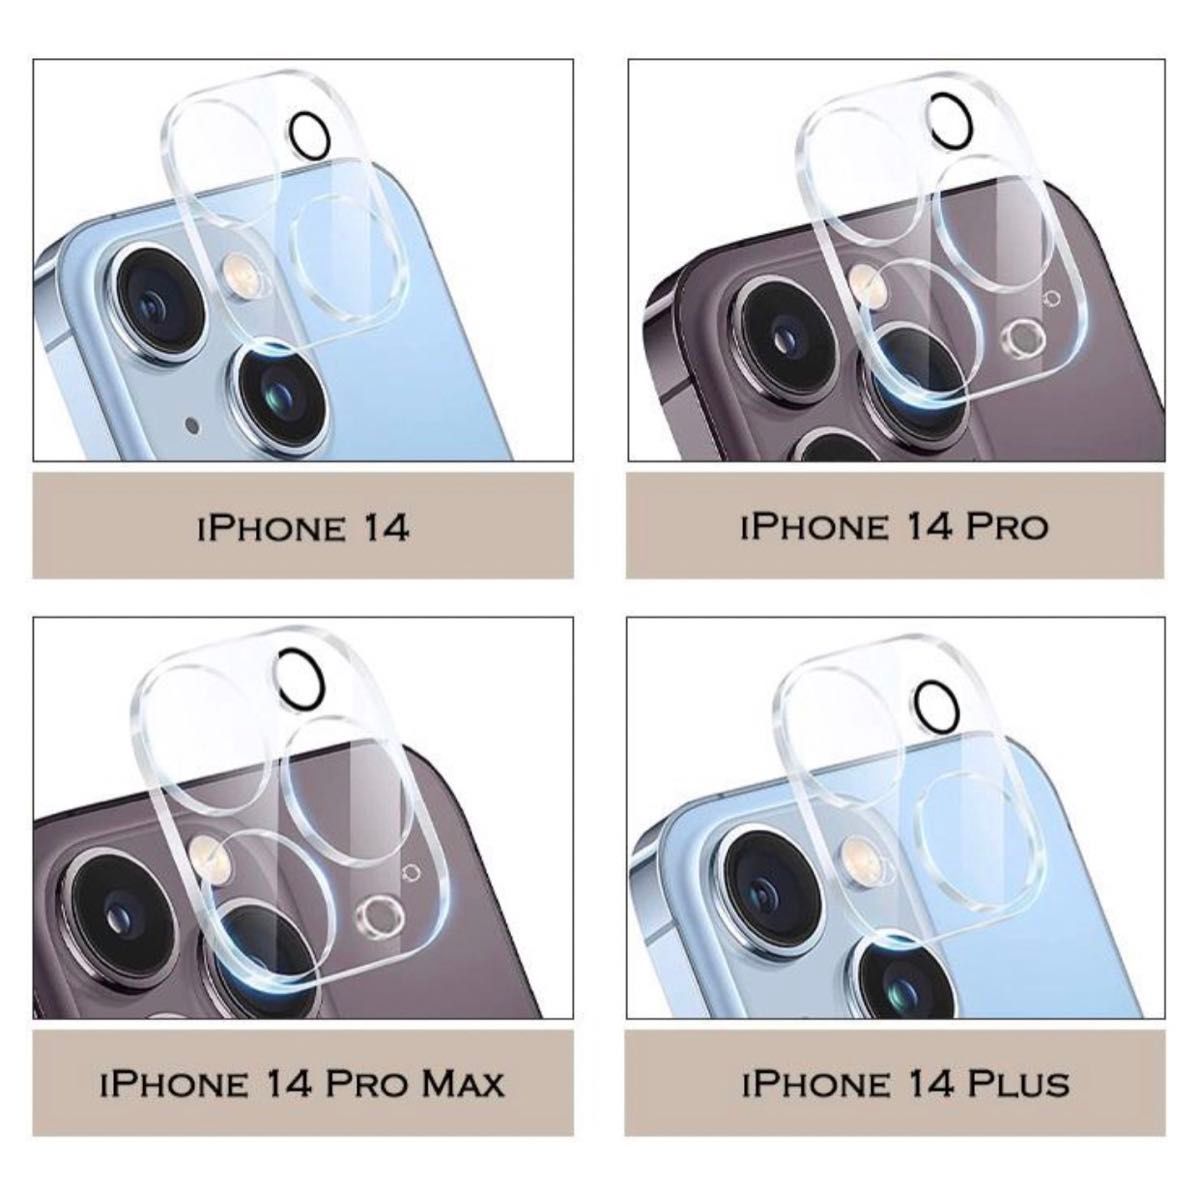 iPhone13pro promax カメラレンズ 保護フィルム ガラスフィルム 強化ガラス 硬度9H iPad